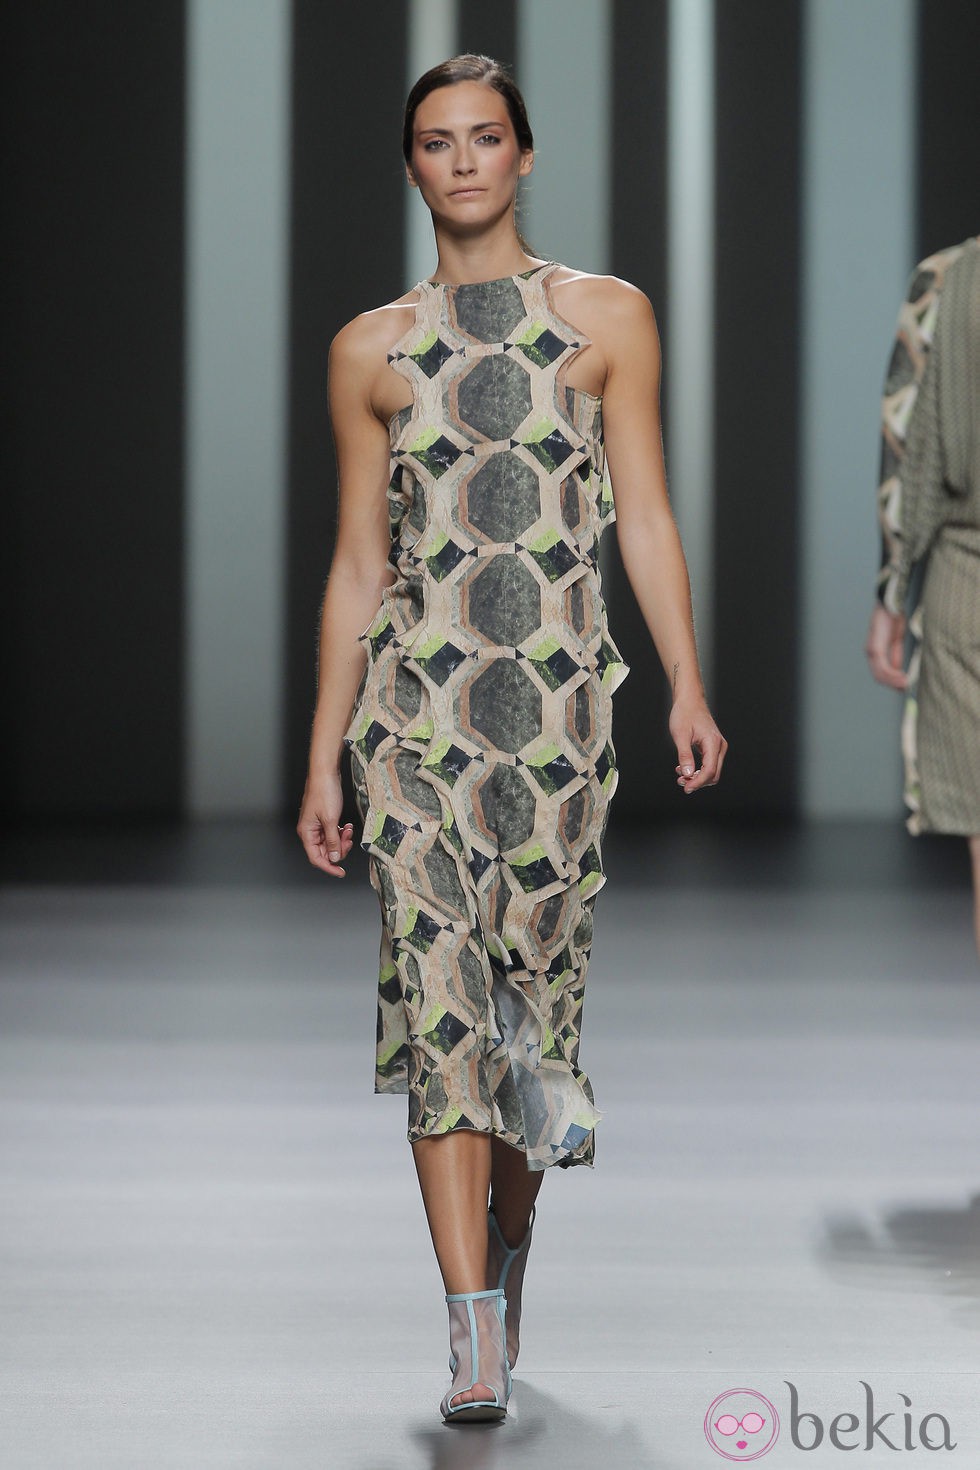 Vestido con estampado geométrico de Martín Lamothe, colección primavera/verano 2013